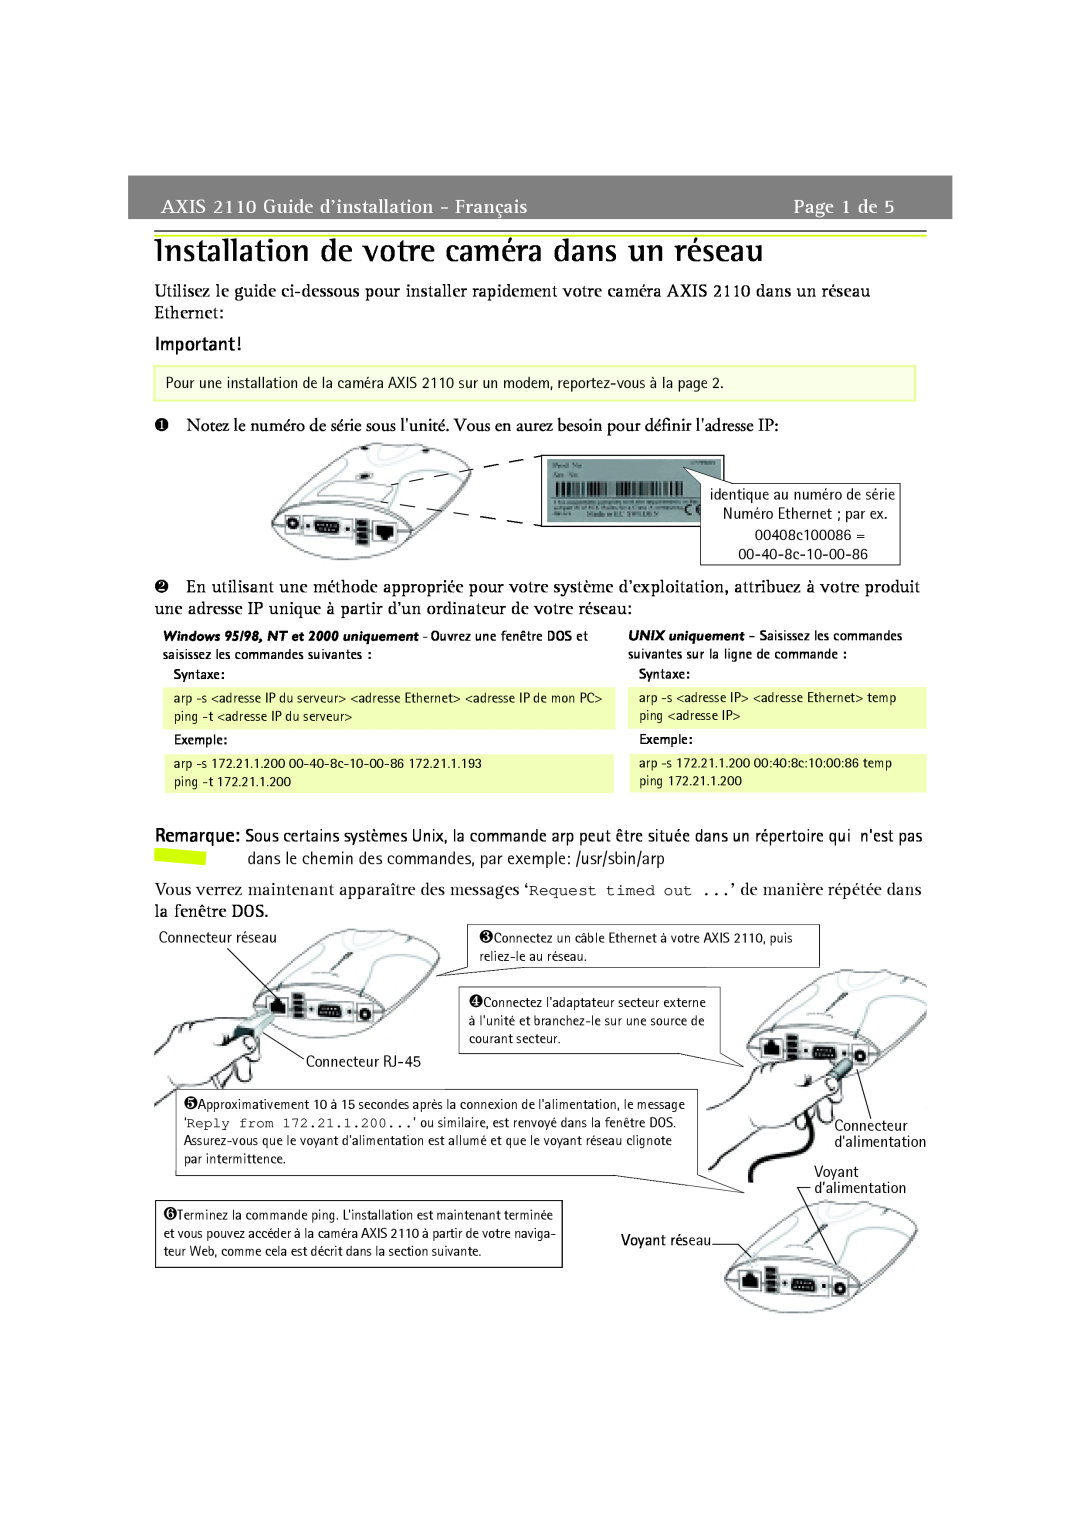 Axis Communications Installation de votre caméra dans un réseau, AXIS 2110 Guide d’installation - Français, Page 1 de 